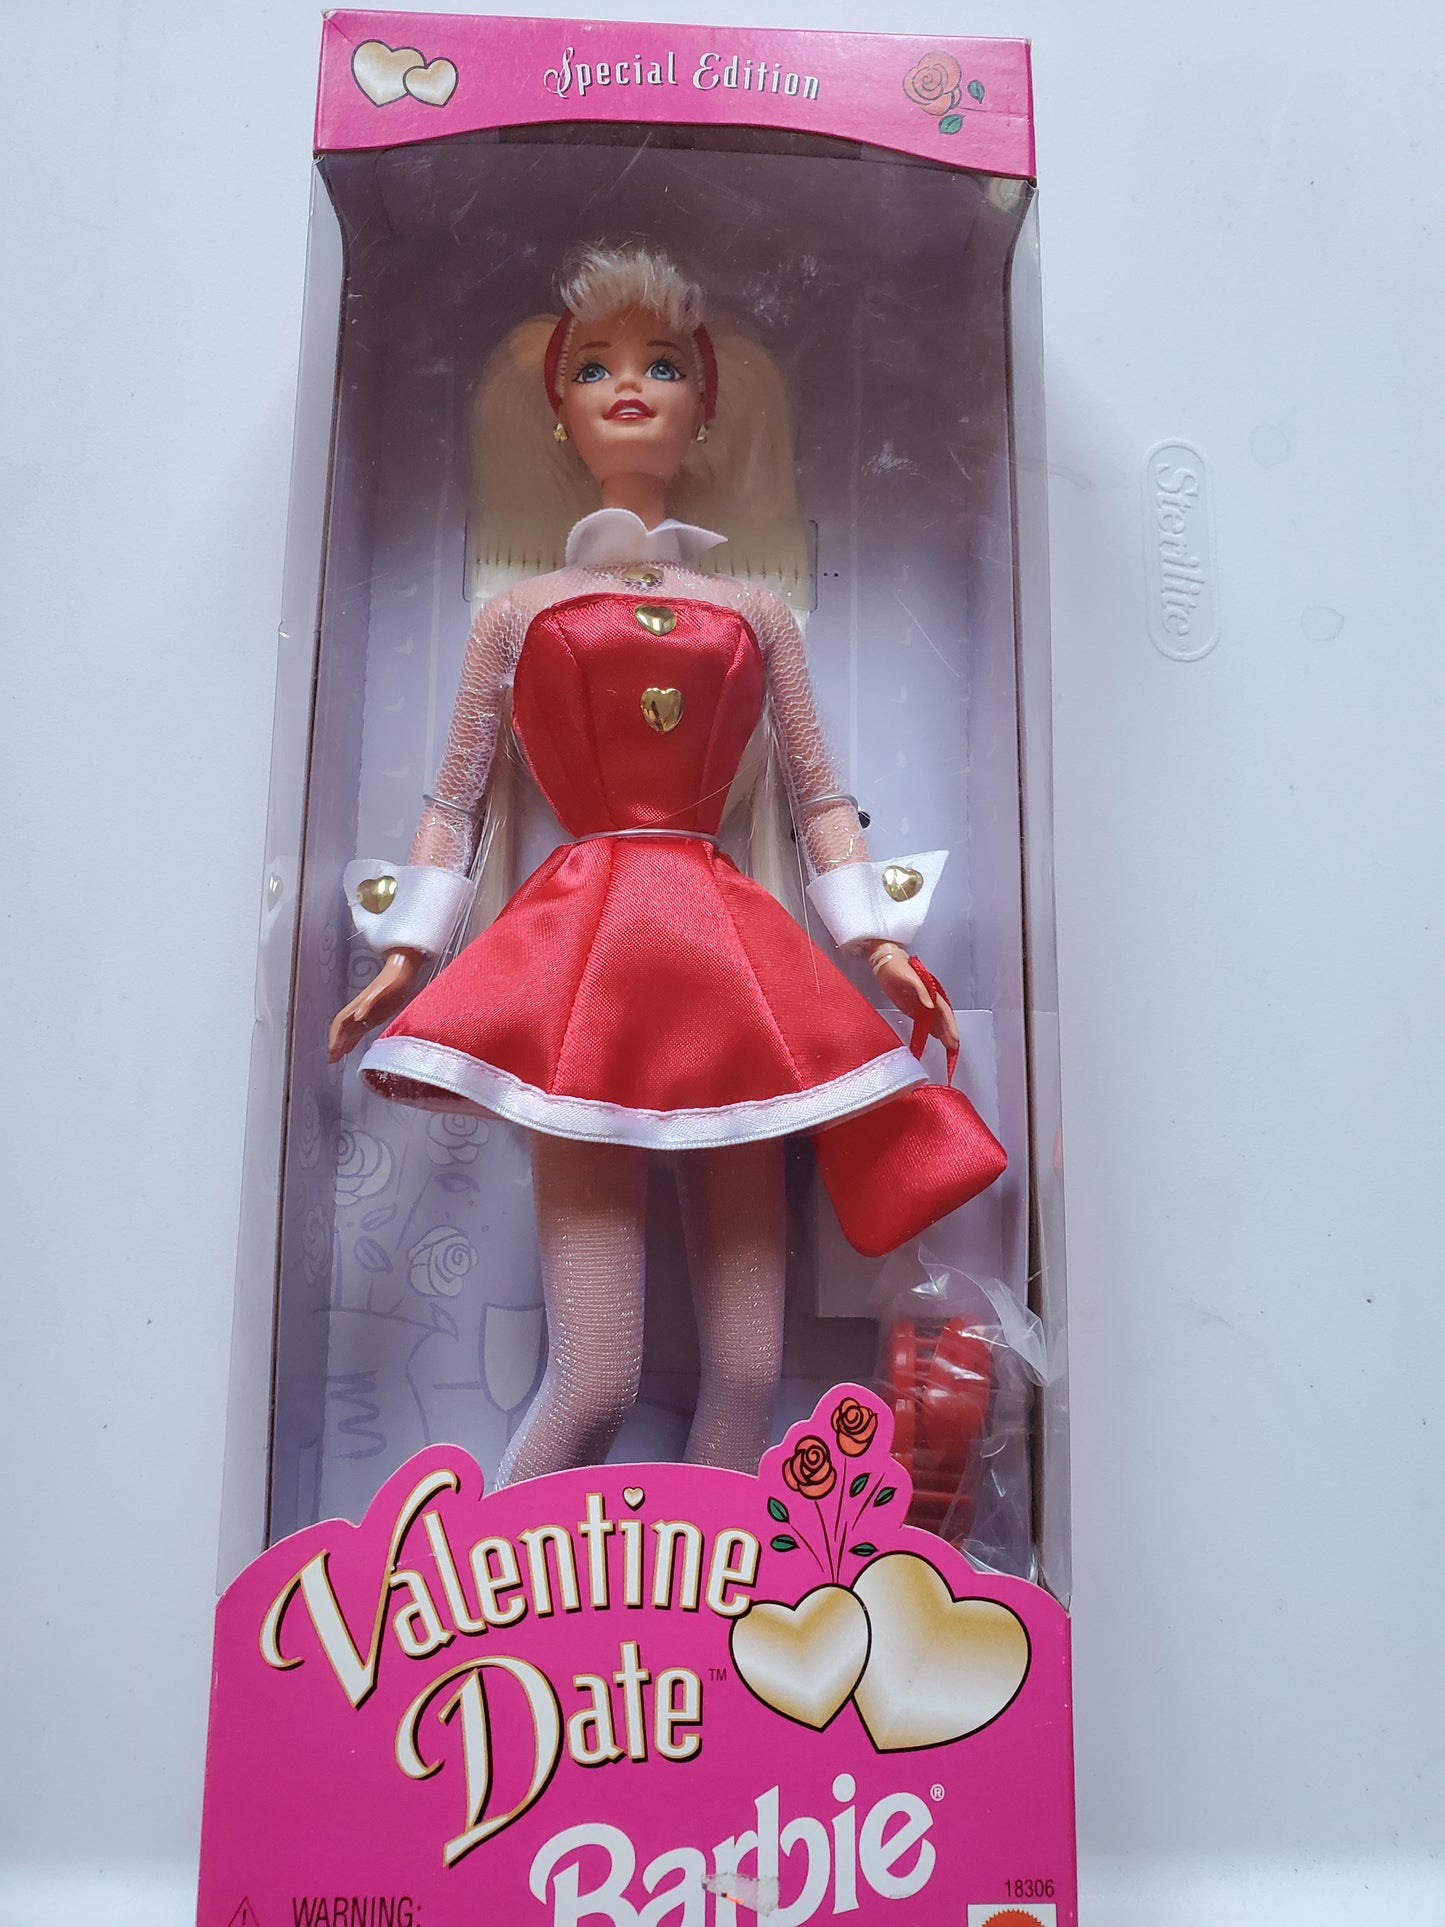 Valentine Date Barbie Doll Mint in Box - 1997